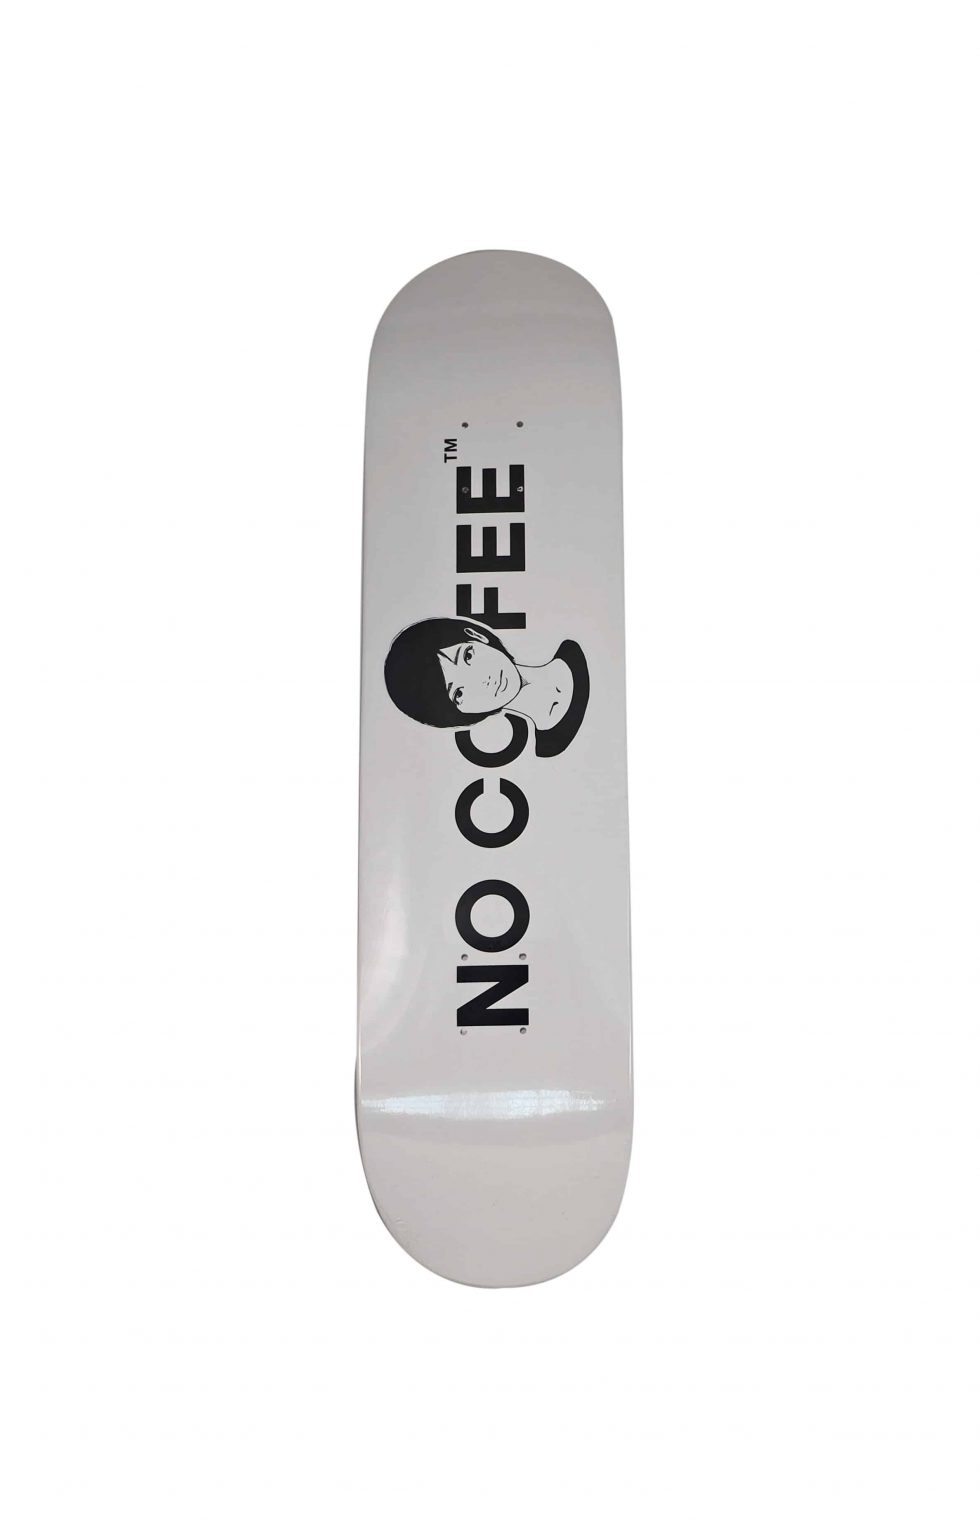 Lot #14583 – KYNE x No Coffee Skateboard Deck KYNE KYNE Skateboard